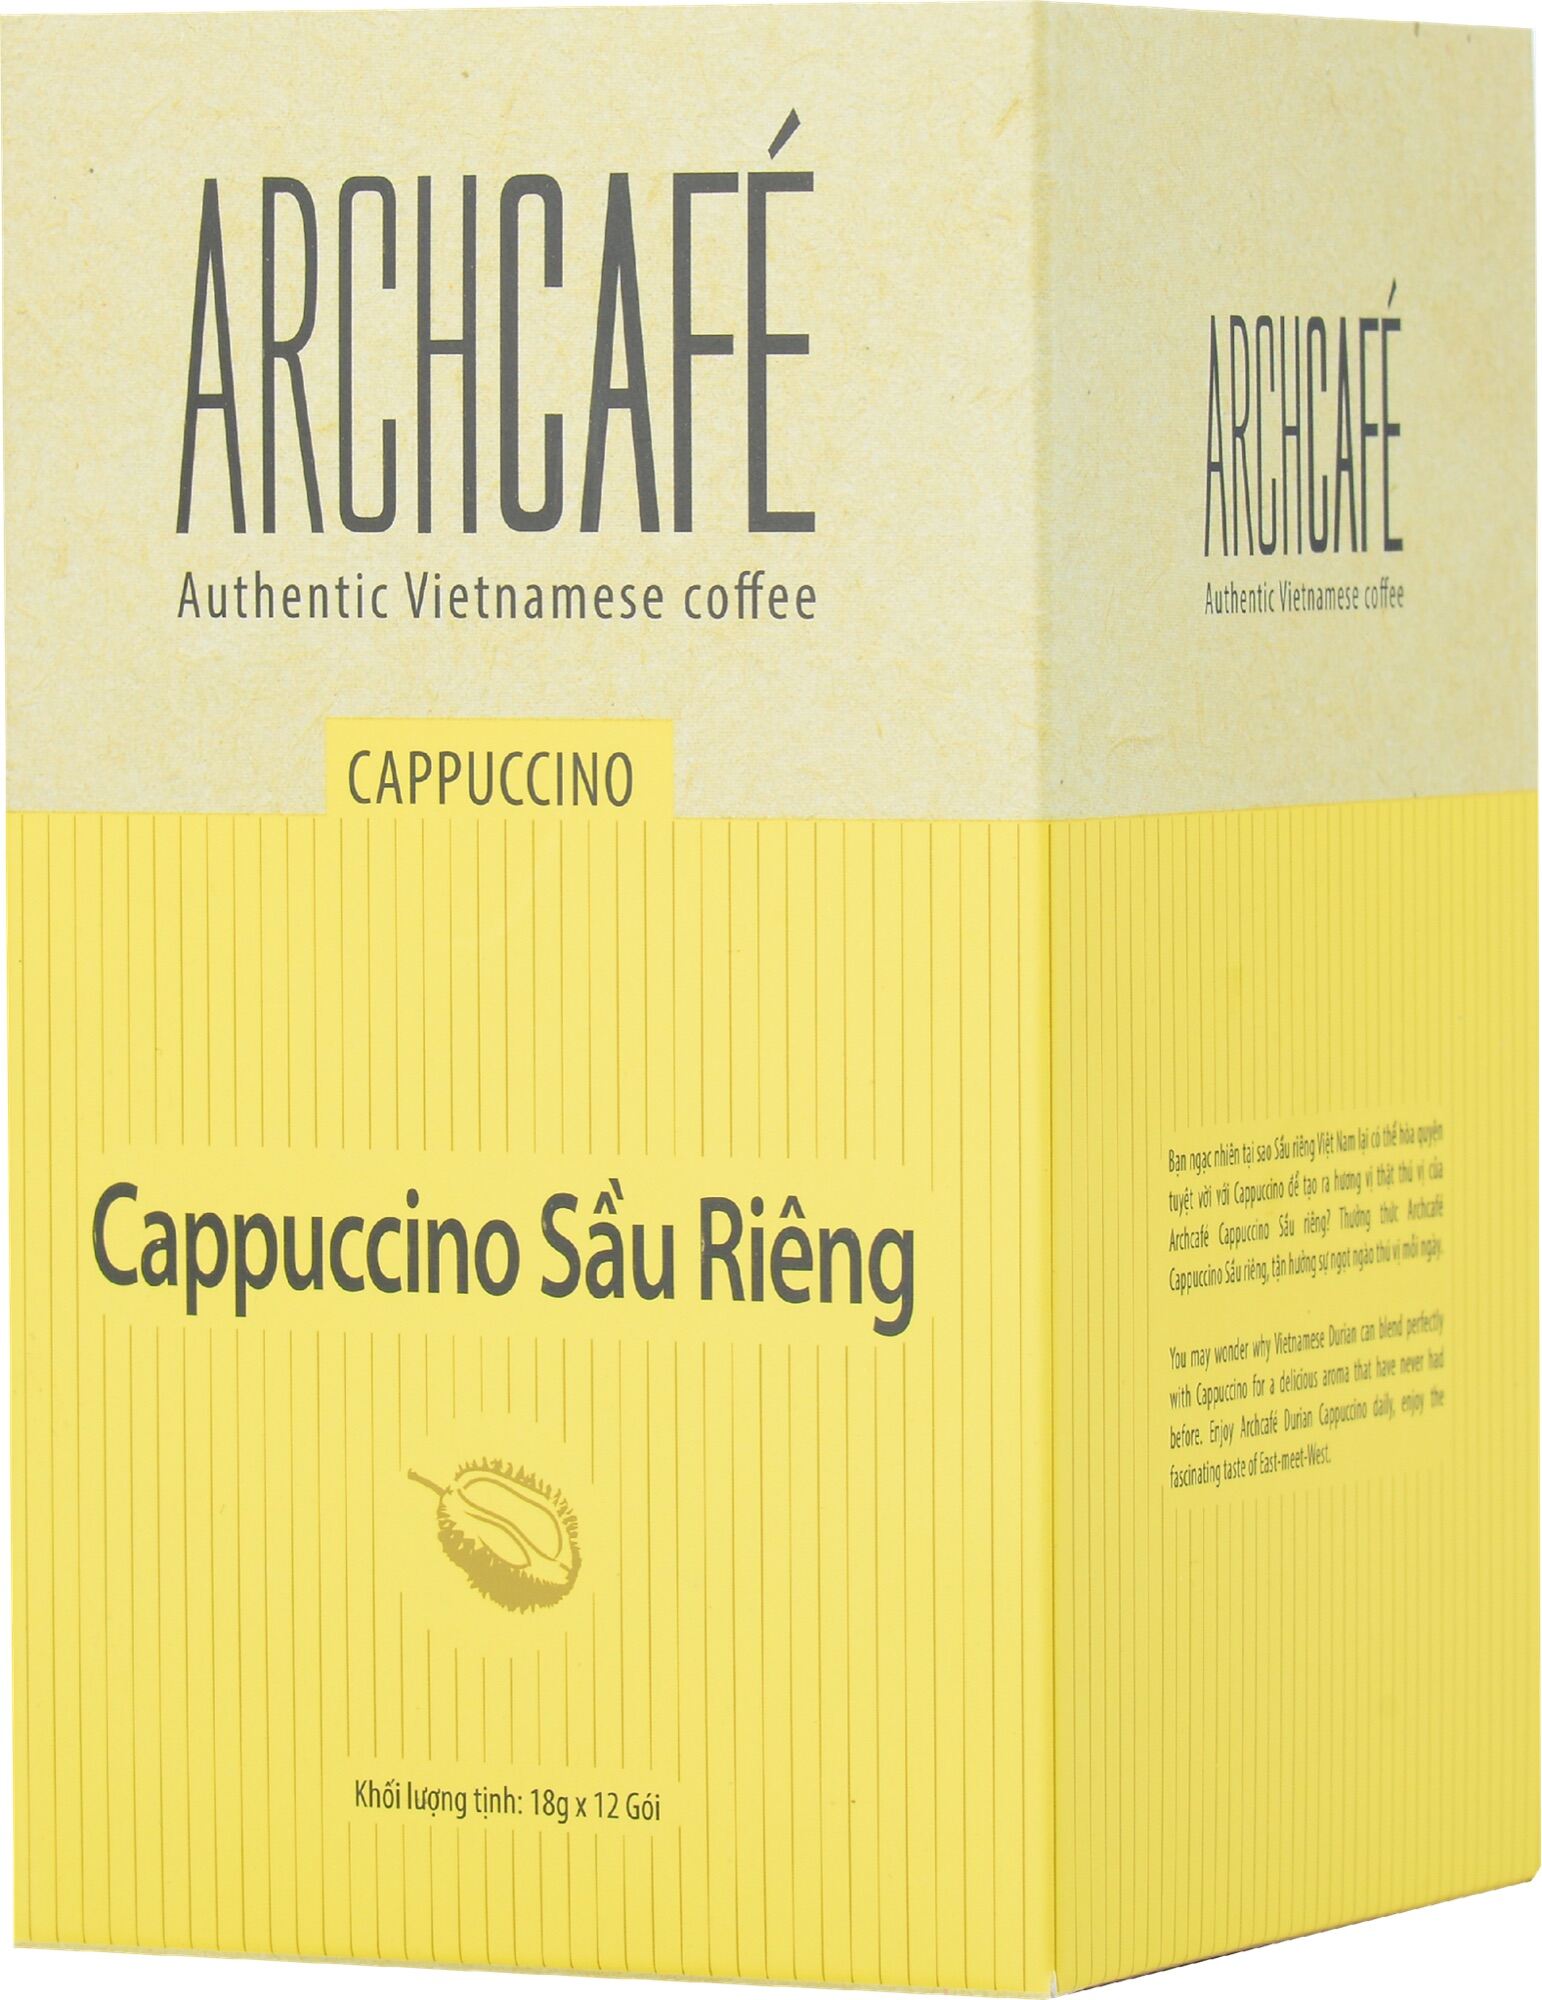 Cà phê Cappuccino Sầu Riêng Archcafé hộp 12 gói x 18.5g